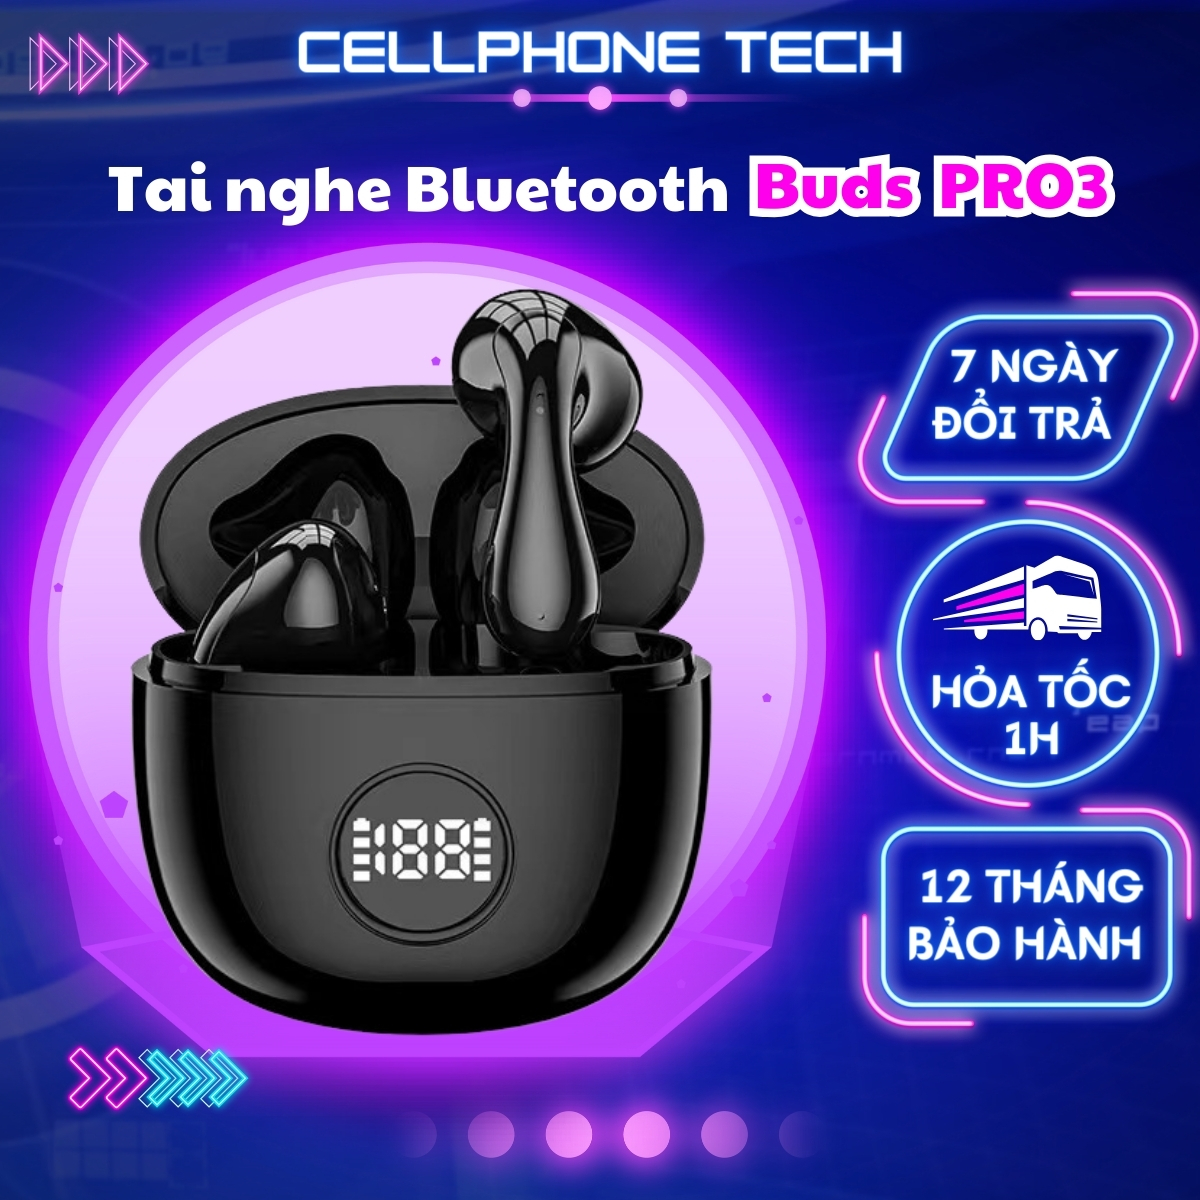 Tai nghe bluetooth không dây TWS Samsung Galaxy Buds Pro 3, đường cong bám tai hoàn hảo, âm thanh đỉnh cao, có micro đàm thoại